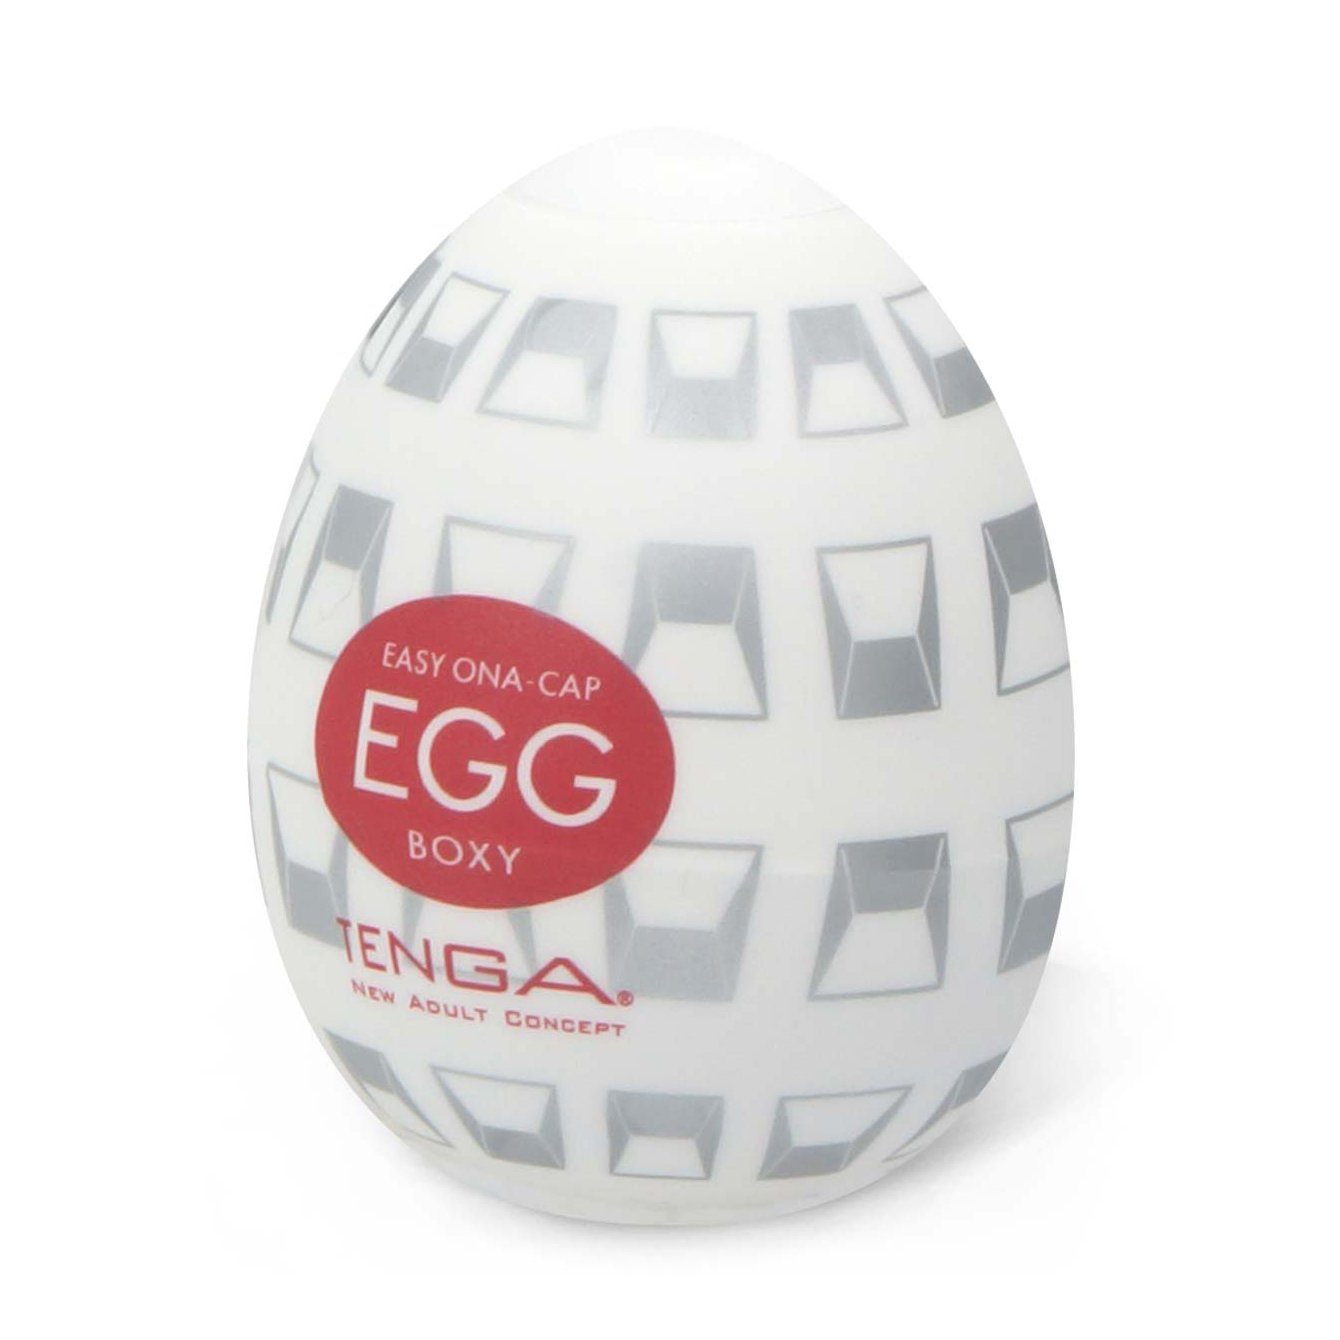 TENGA Egg Boxy 多角飛機蛋 飛機蛋 購買